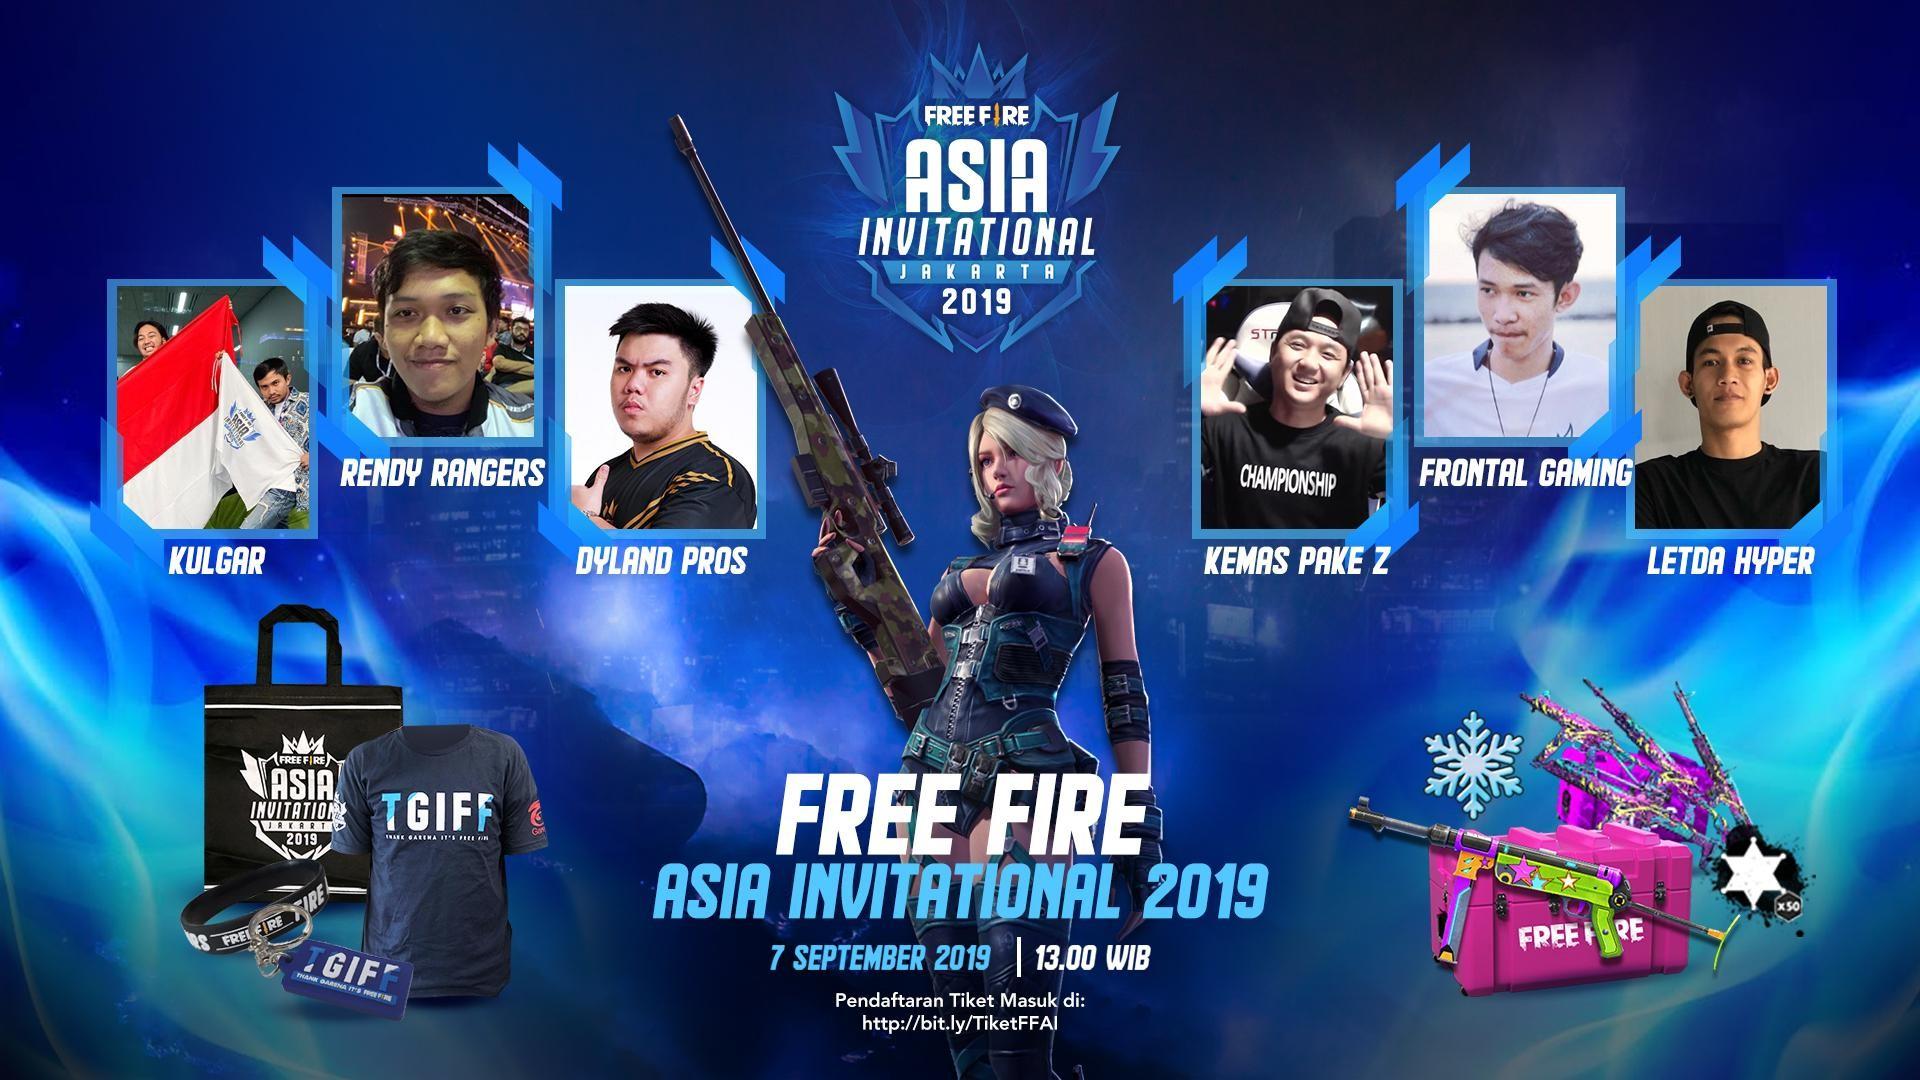 Beragam Merchandise dan Doorprize serta Youtuber yang akan Mewarnai Kemeriahan Turnamen Internasional Free Fire Asia Invitational 2019